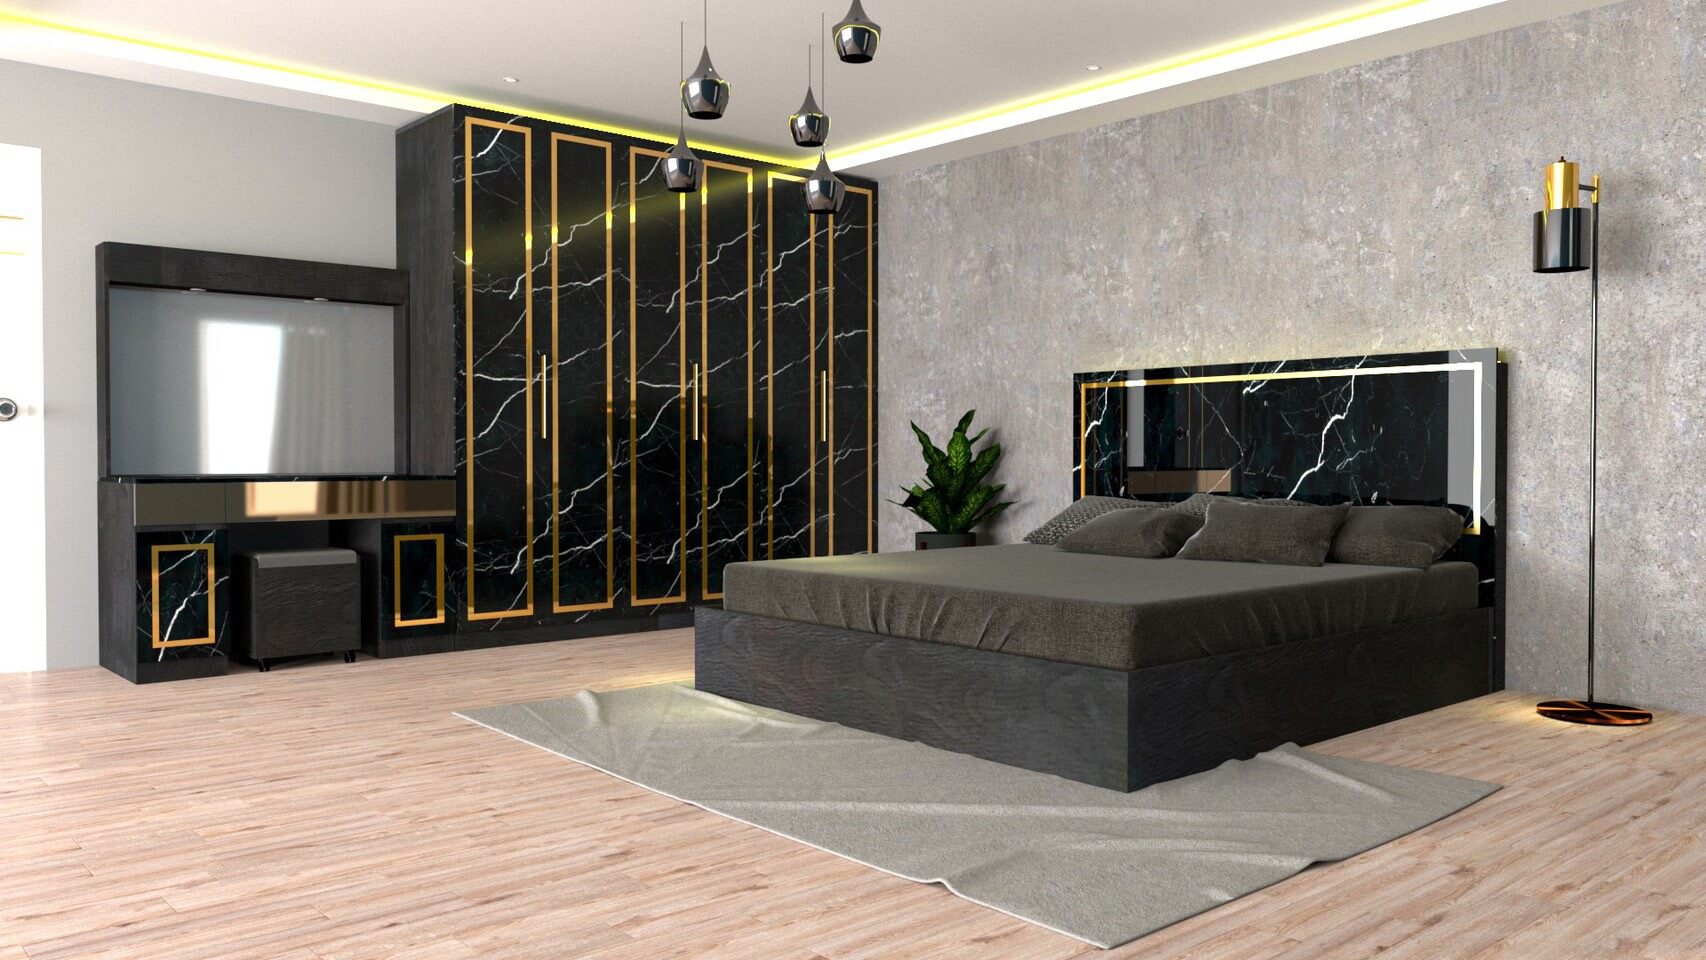 RF Furniture ชุดห้องนอน 5ฟุต รุ่น Jessica A บานทึบ ( เตียง 5ฟุต +ตู้หัวเตียง 2ข้าง+โต๊ะแป้ง 120 ซม.+ตู้เสื้อผ้า 2.40ม. +ที่นอนสปริง ) Bedroom Set สี AG/DM/GL